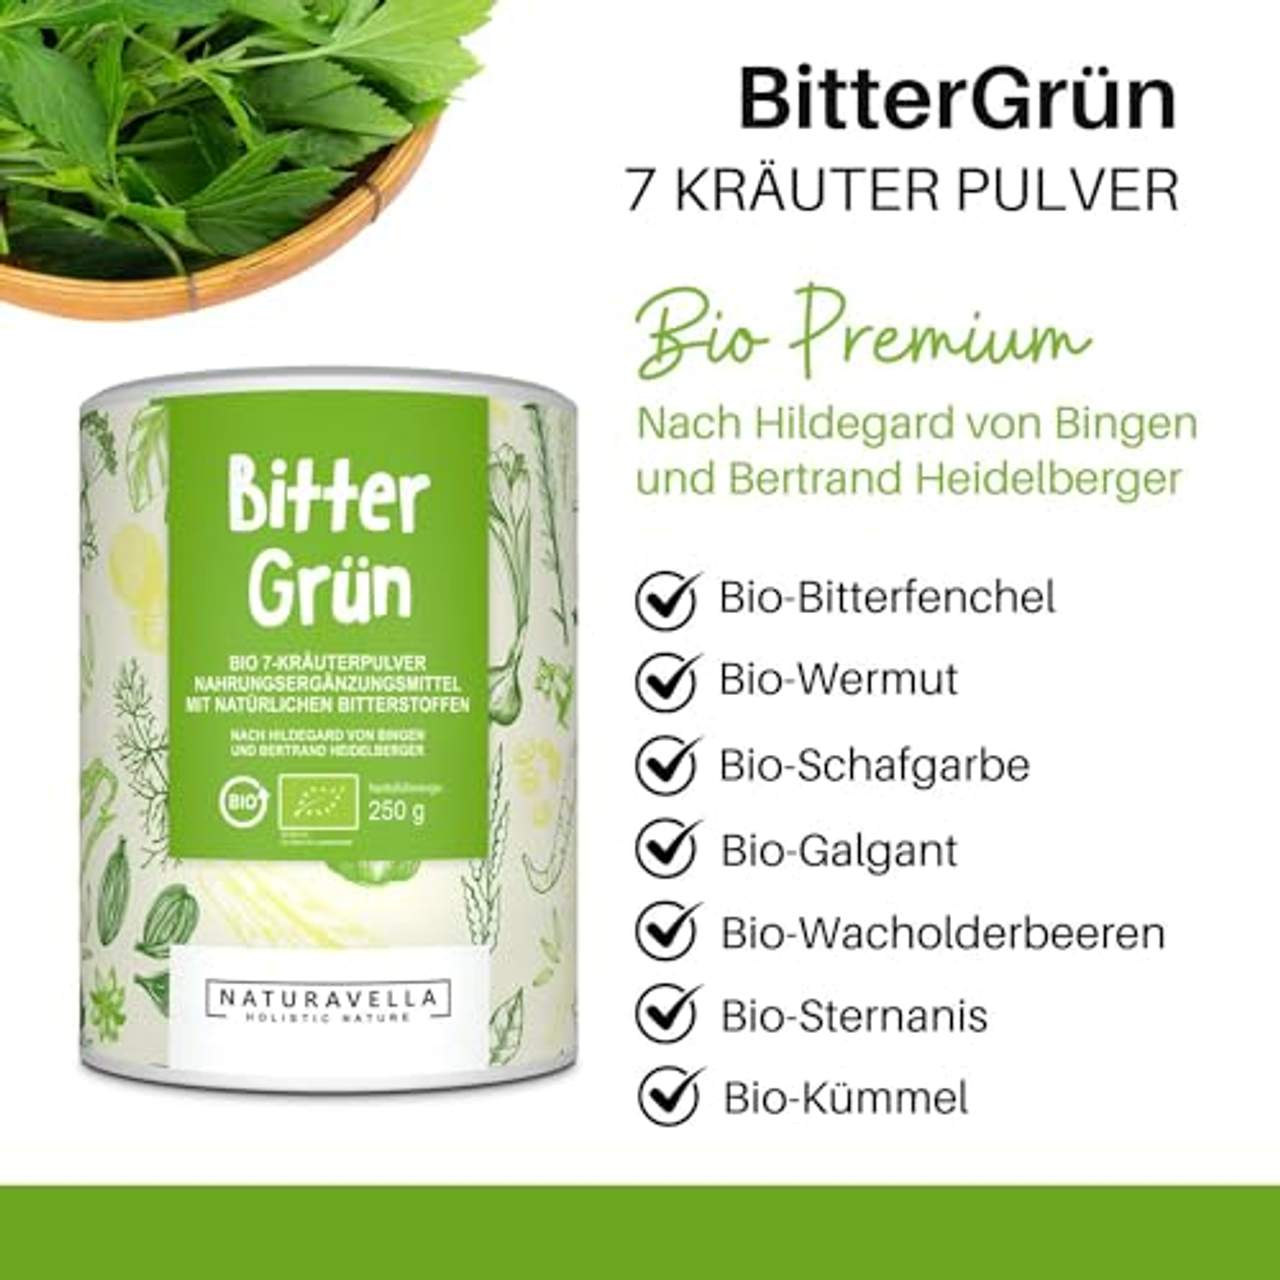 BitterGrün Bio Premium Bitterstoffe 7 Kräuter-Pulver vom Experten